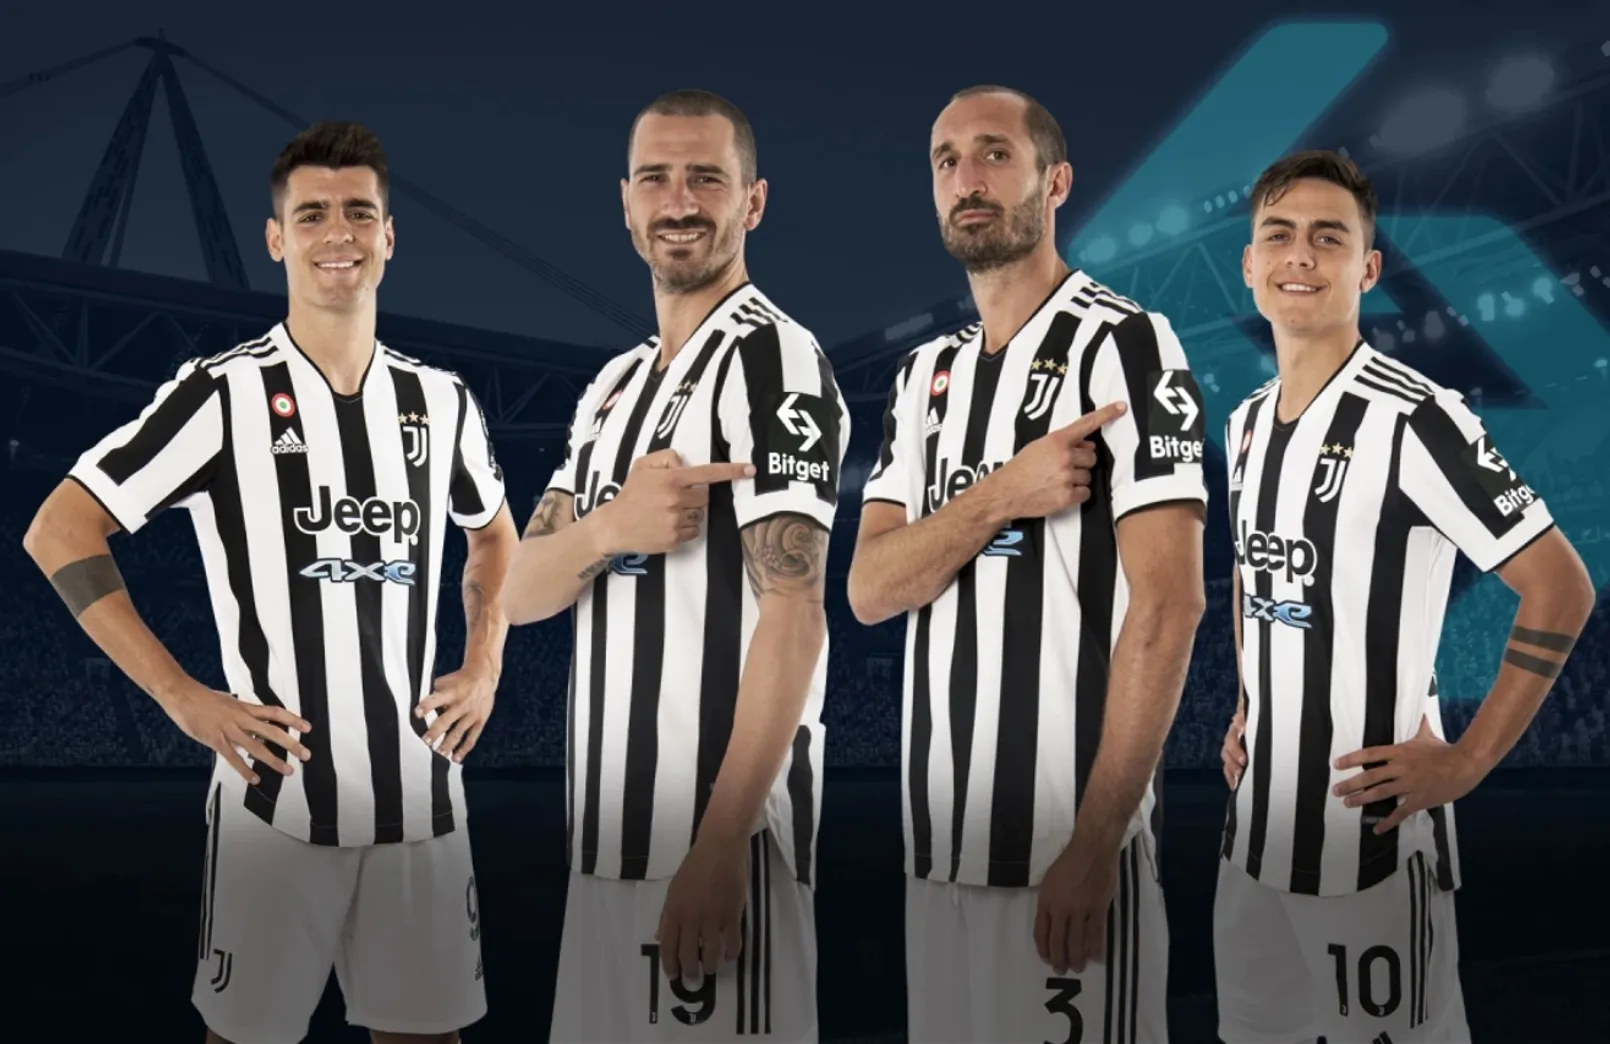 Juventus Sponsor Manica.jpeg